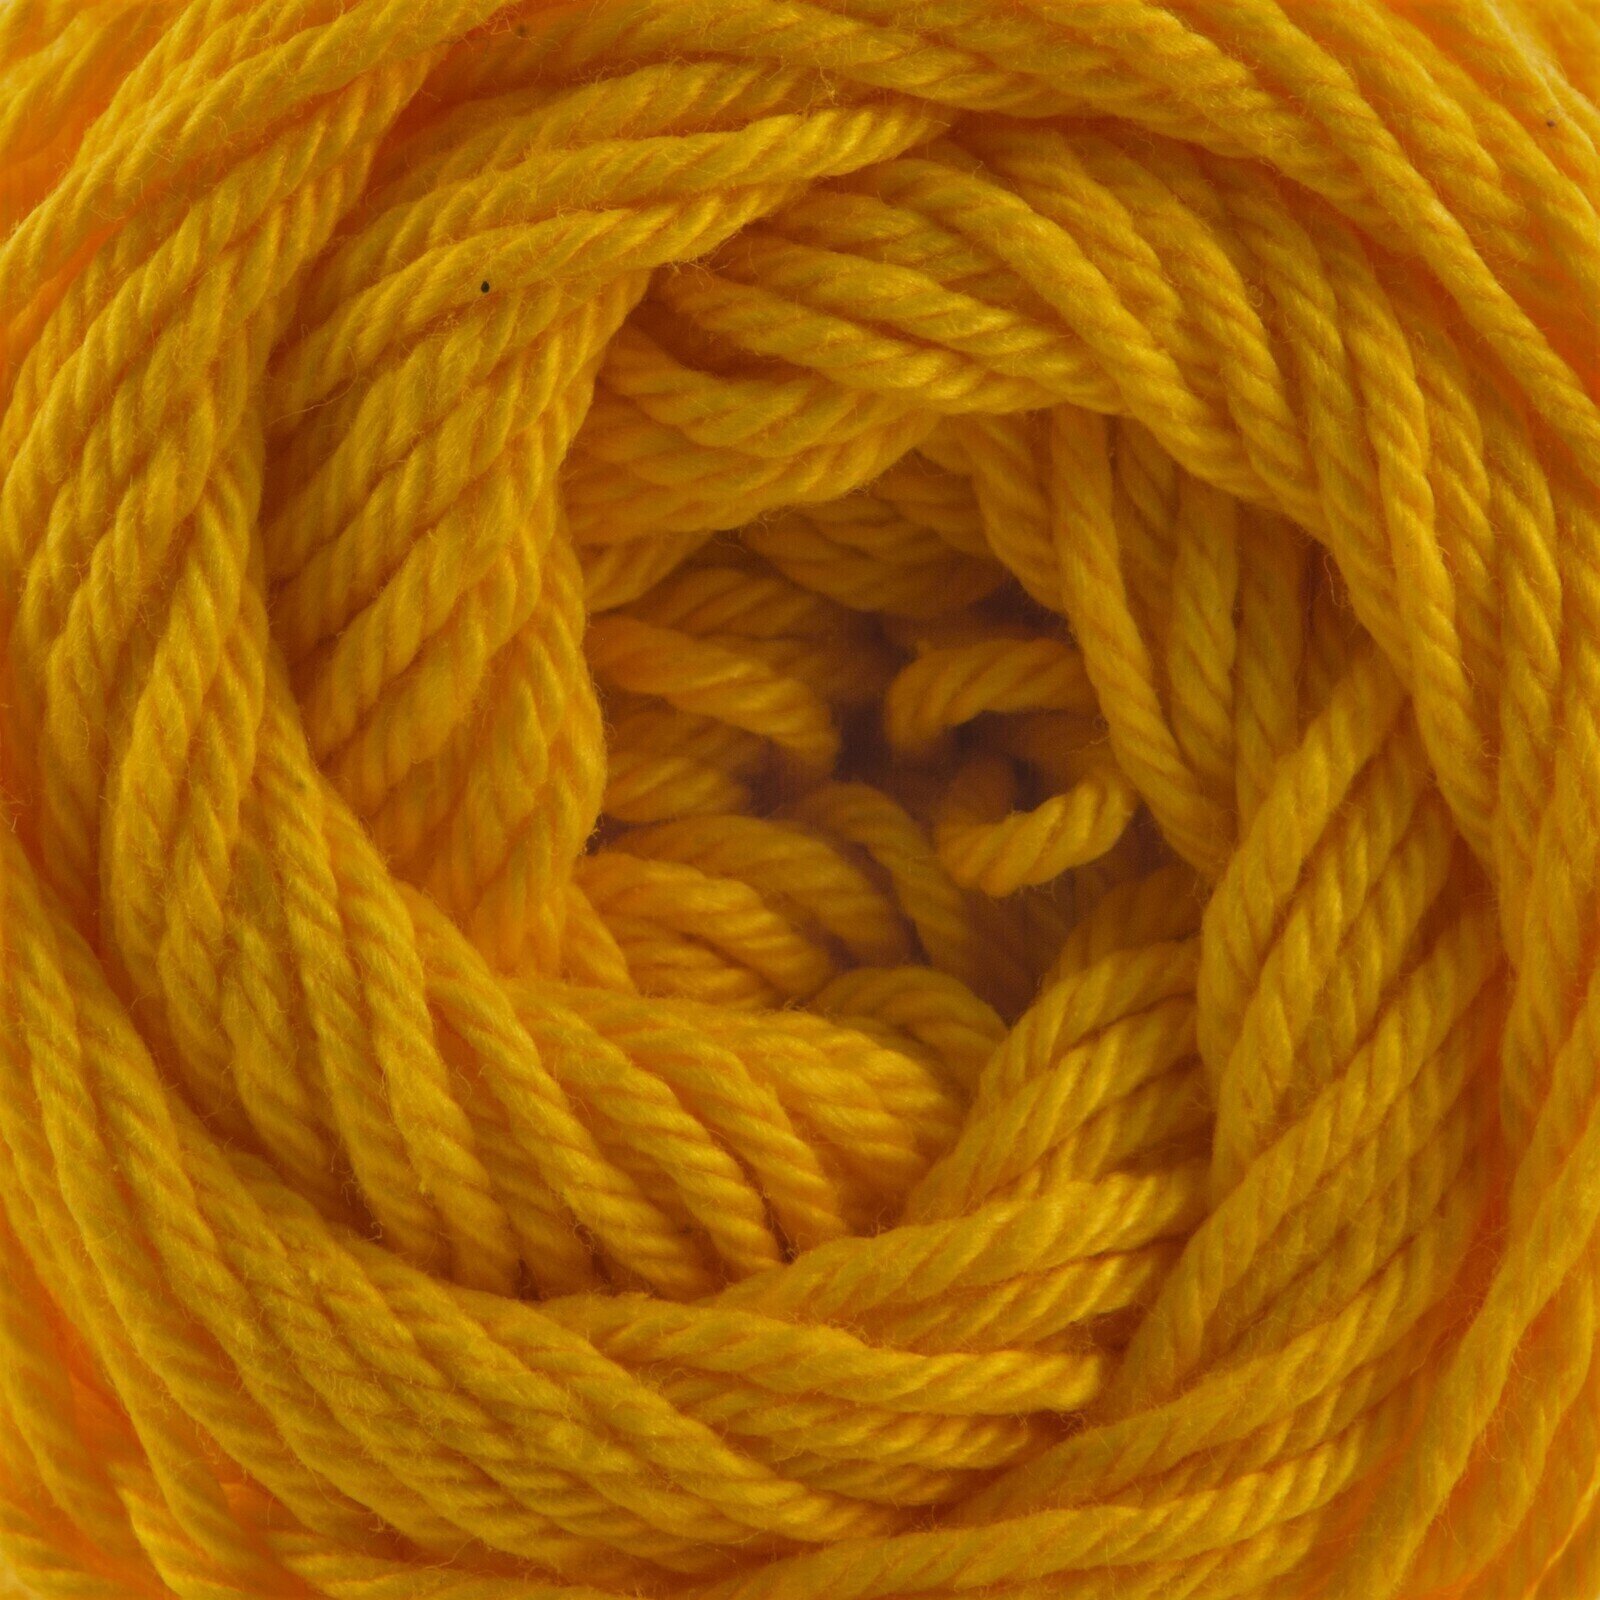 Pletilna preja Nitarna Ceska Trebova Silva 1292 Yellow/Orange